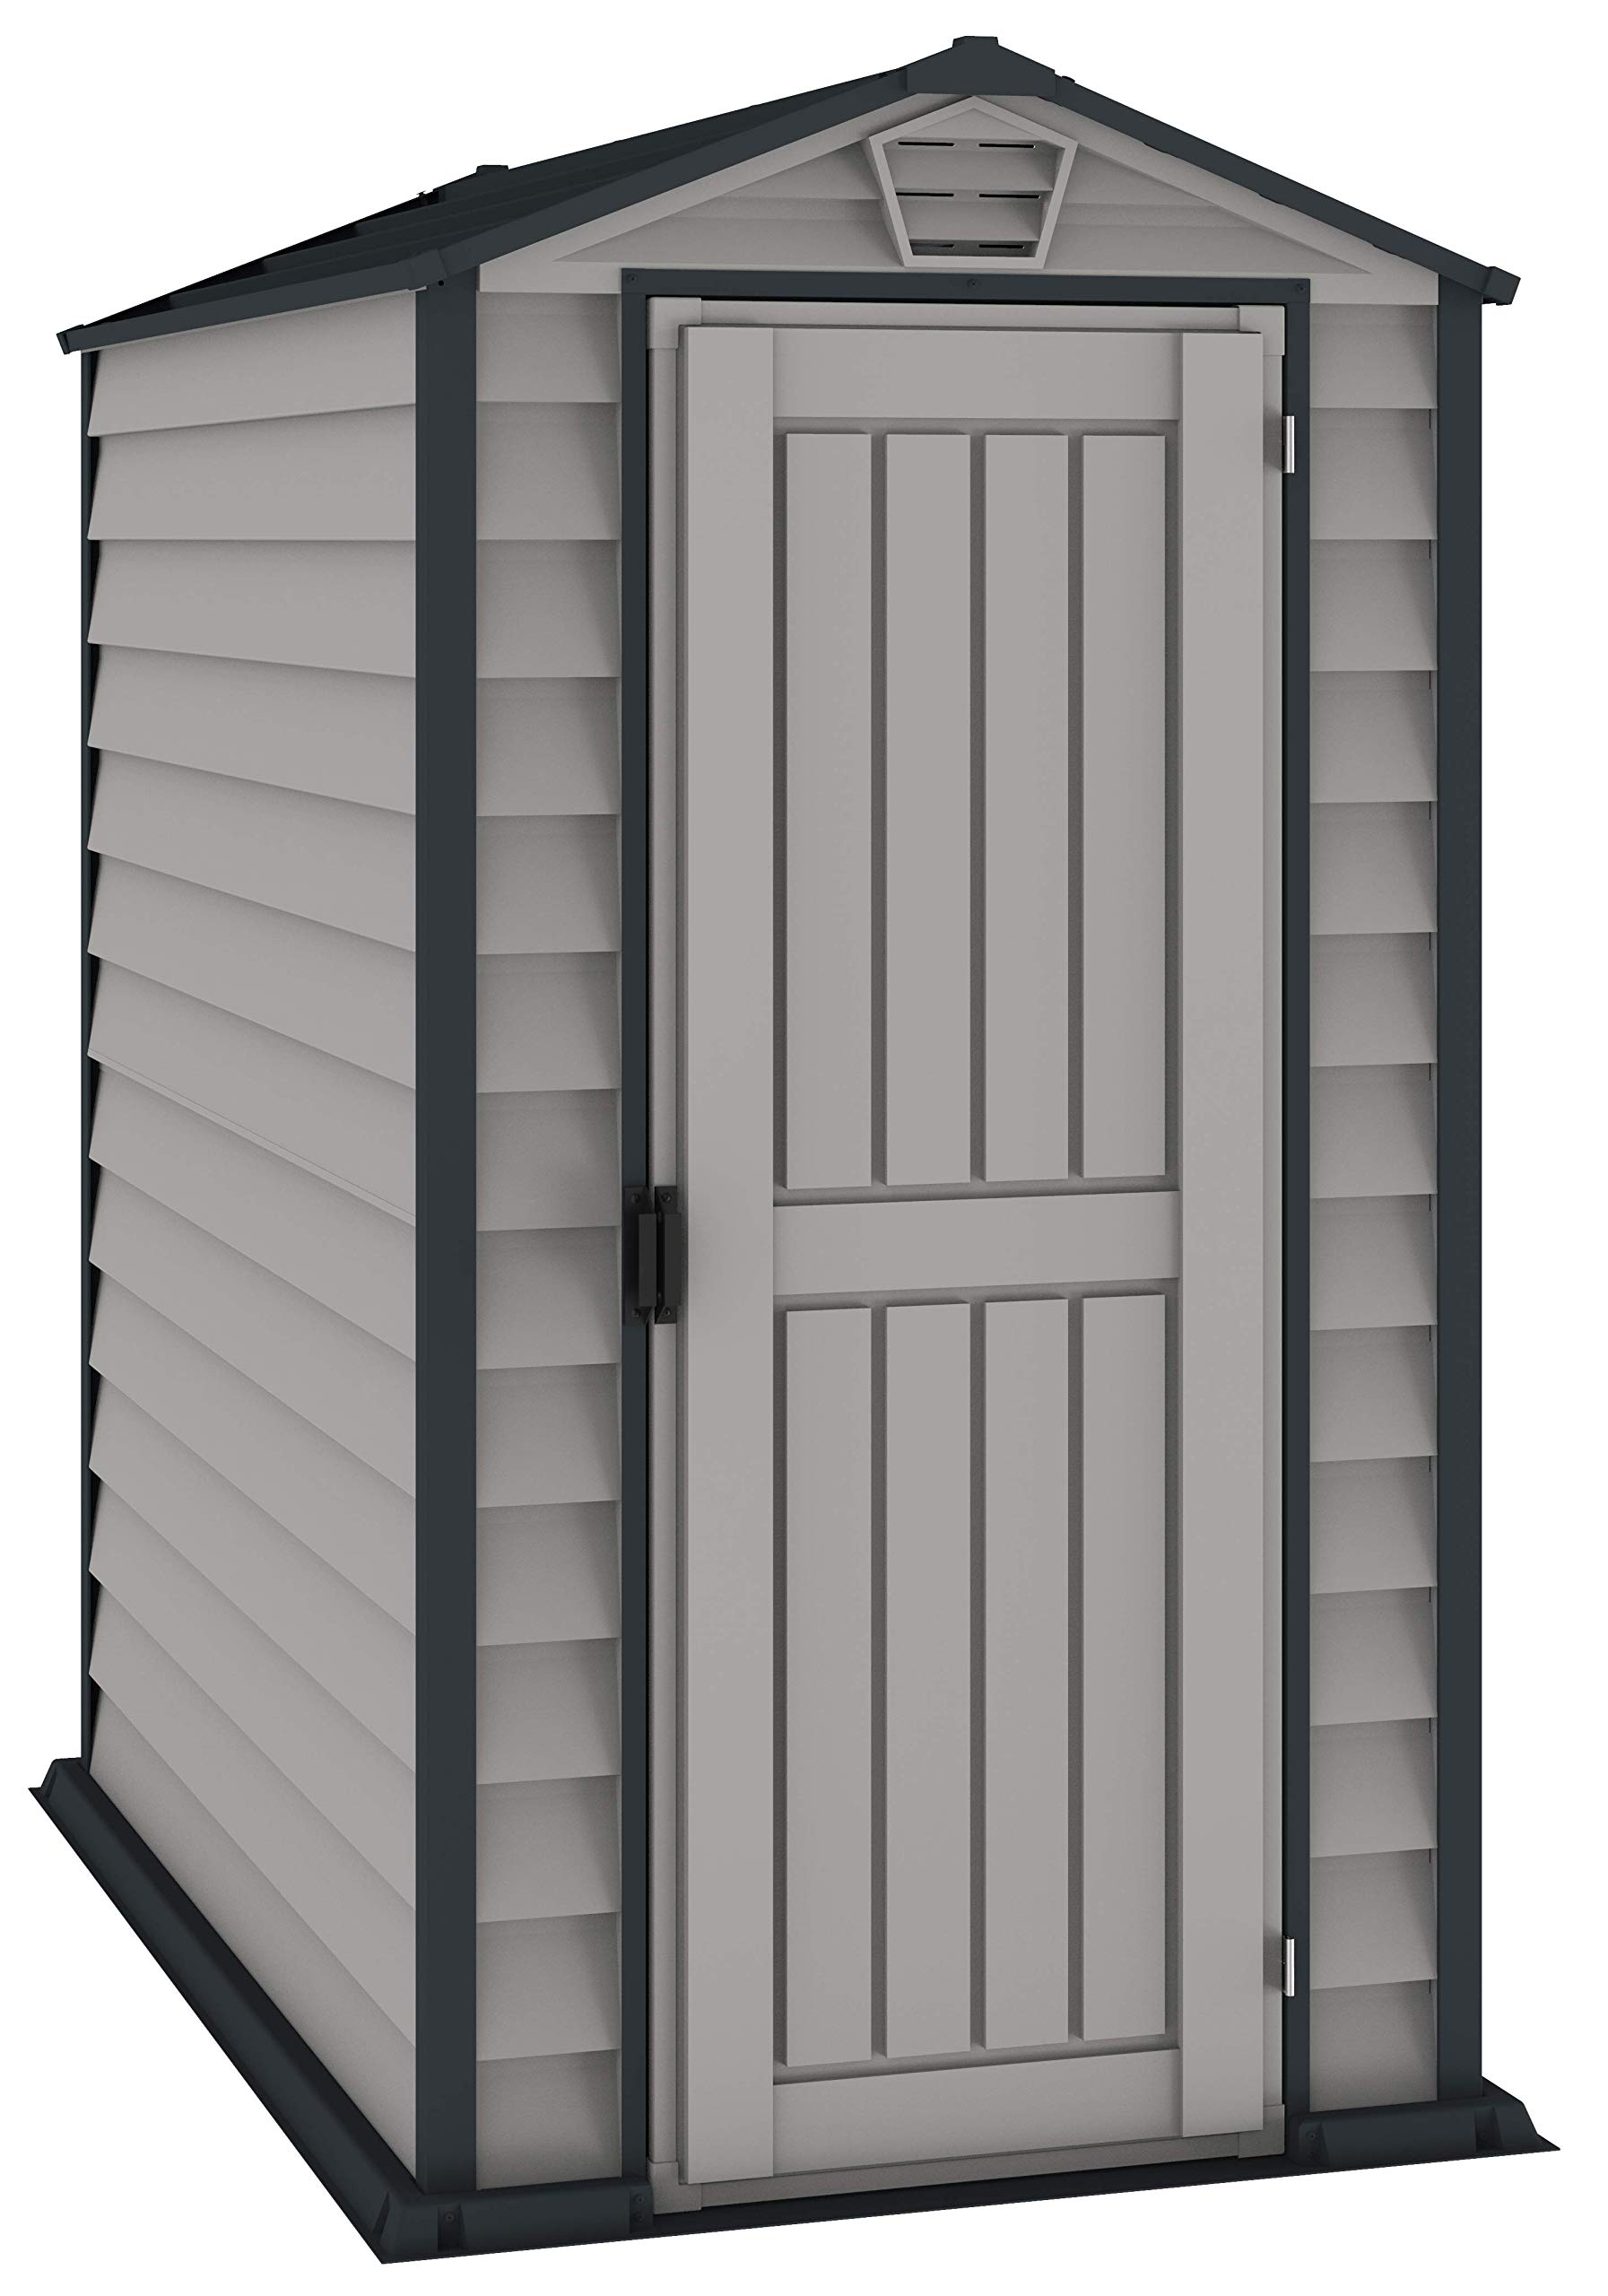 Duramax EverMore 4 x 6 (1.99 m²) Kunststoff gerätehaus, Wetterfeste Aufbewahrungslösung für den Außenbereich, mit Kunststoffboden, robuster Struktur und wartungsfreiem Vinylschuppen, Adobe & Grey